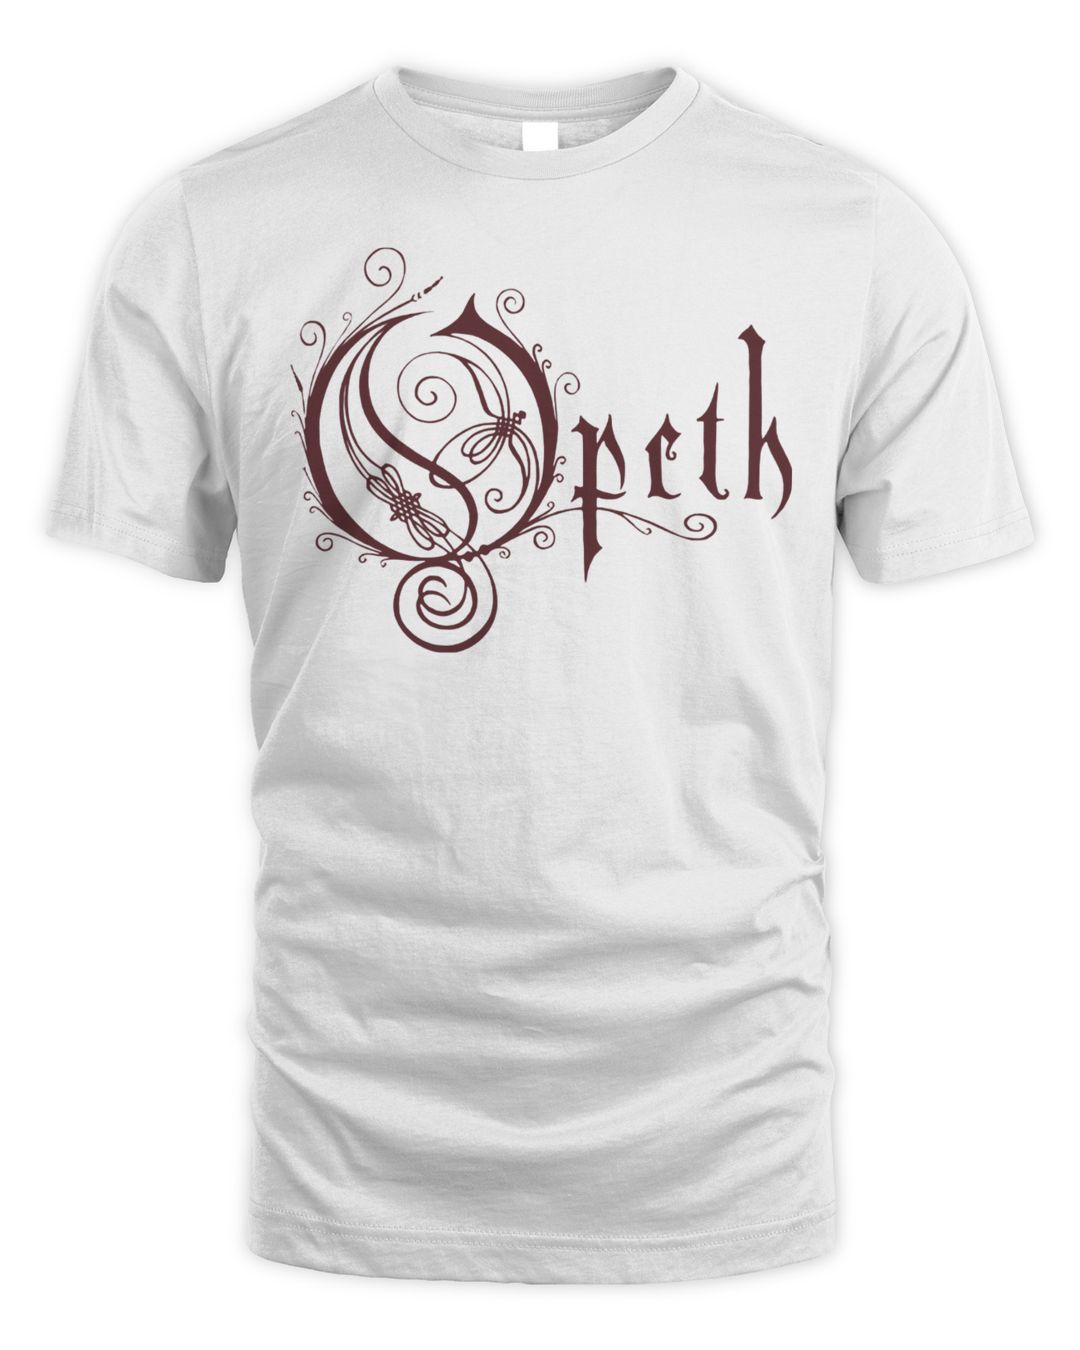 Opeth Merch Cloak Shirt